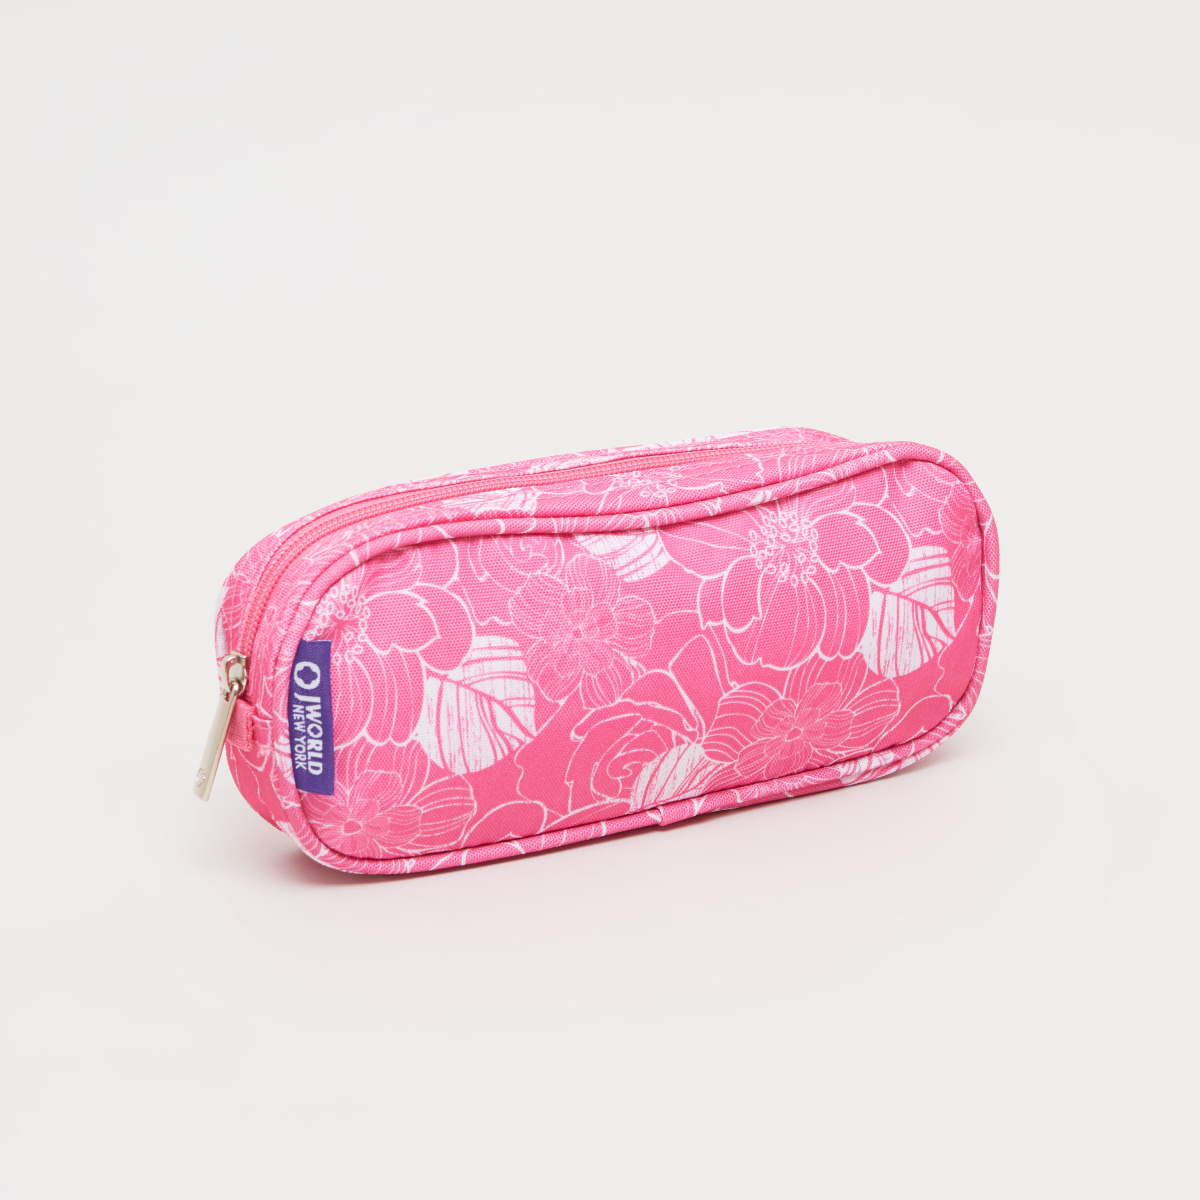 حقيبة أقلام مستطيلة الشكل بطبعات أزهار من ألوها